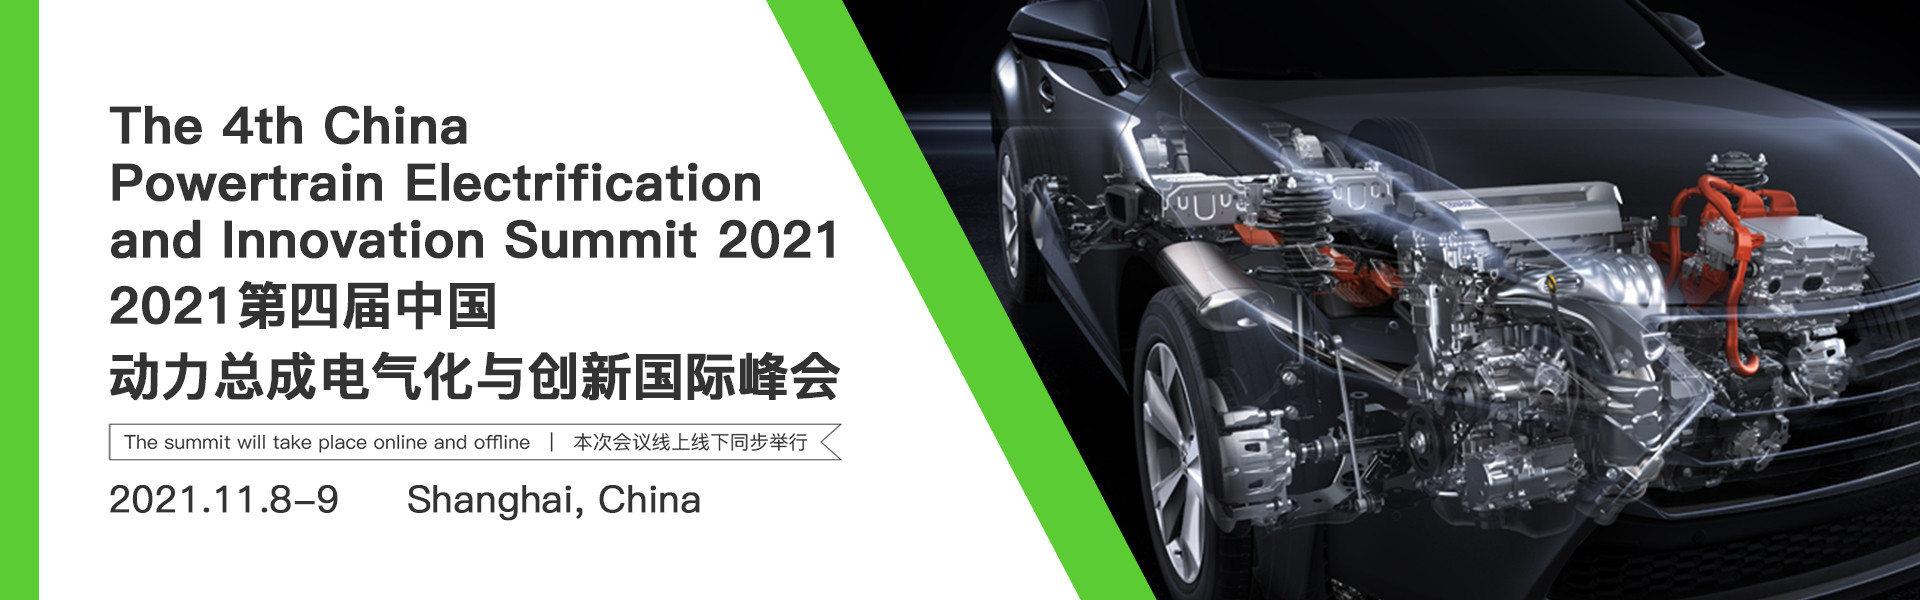 2021第四屆中國動力總成電氣化與創新國際峰會